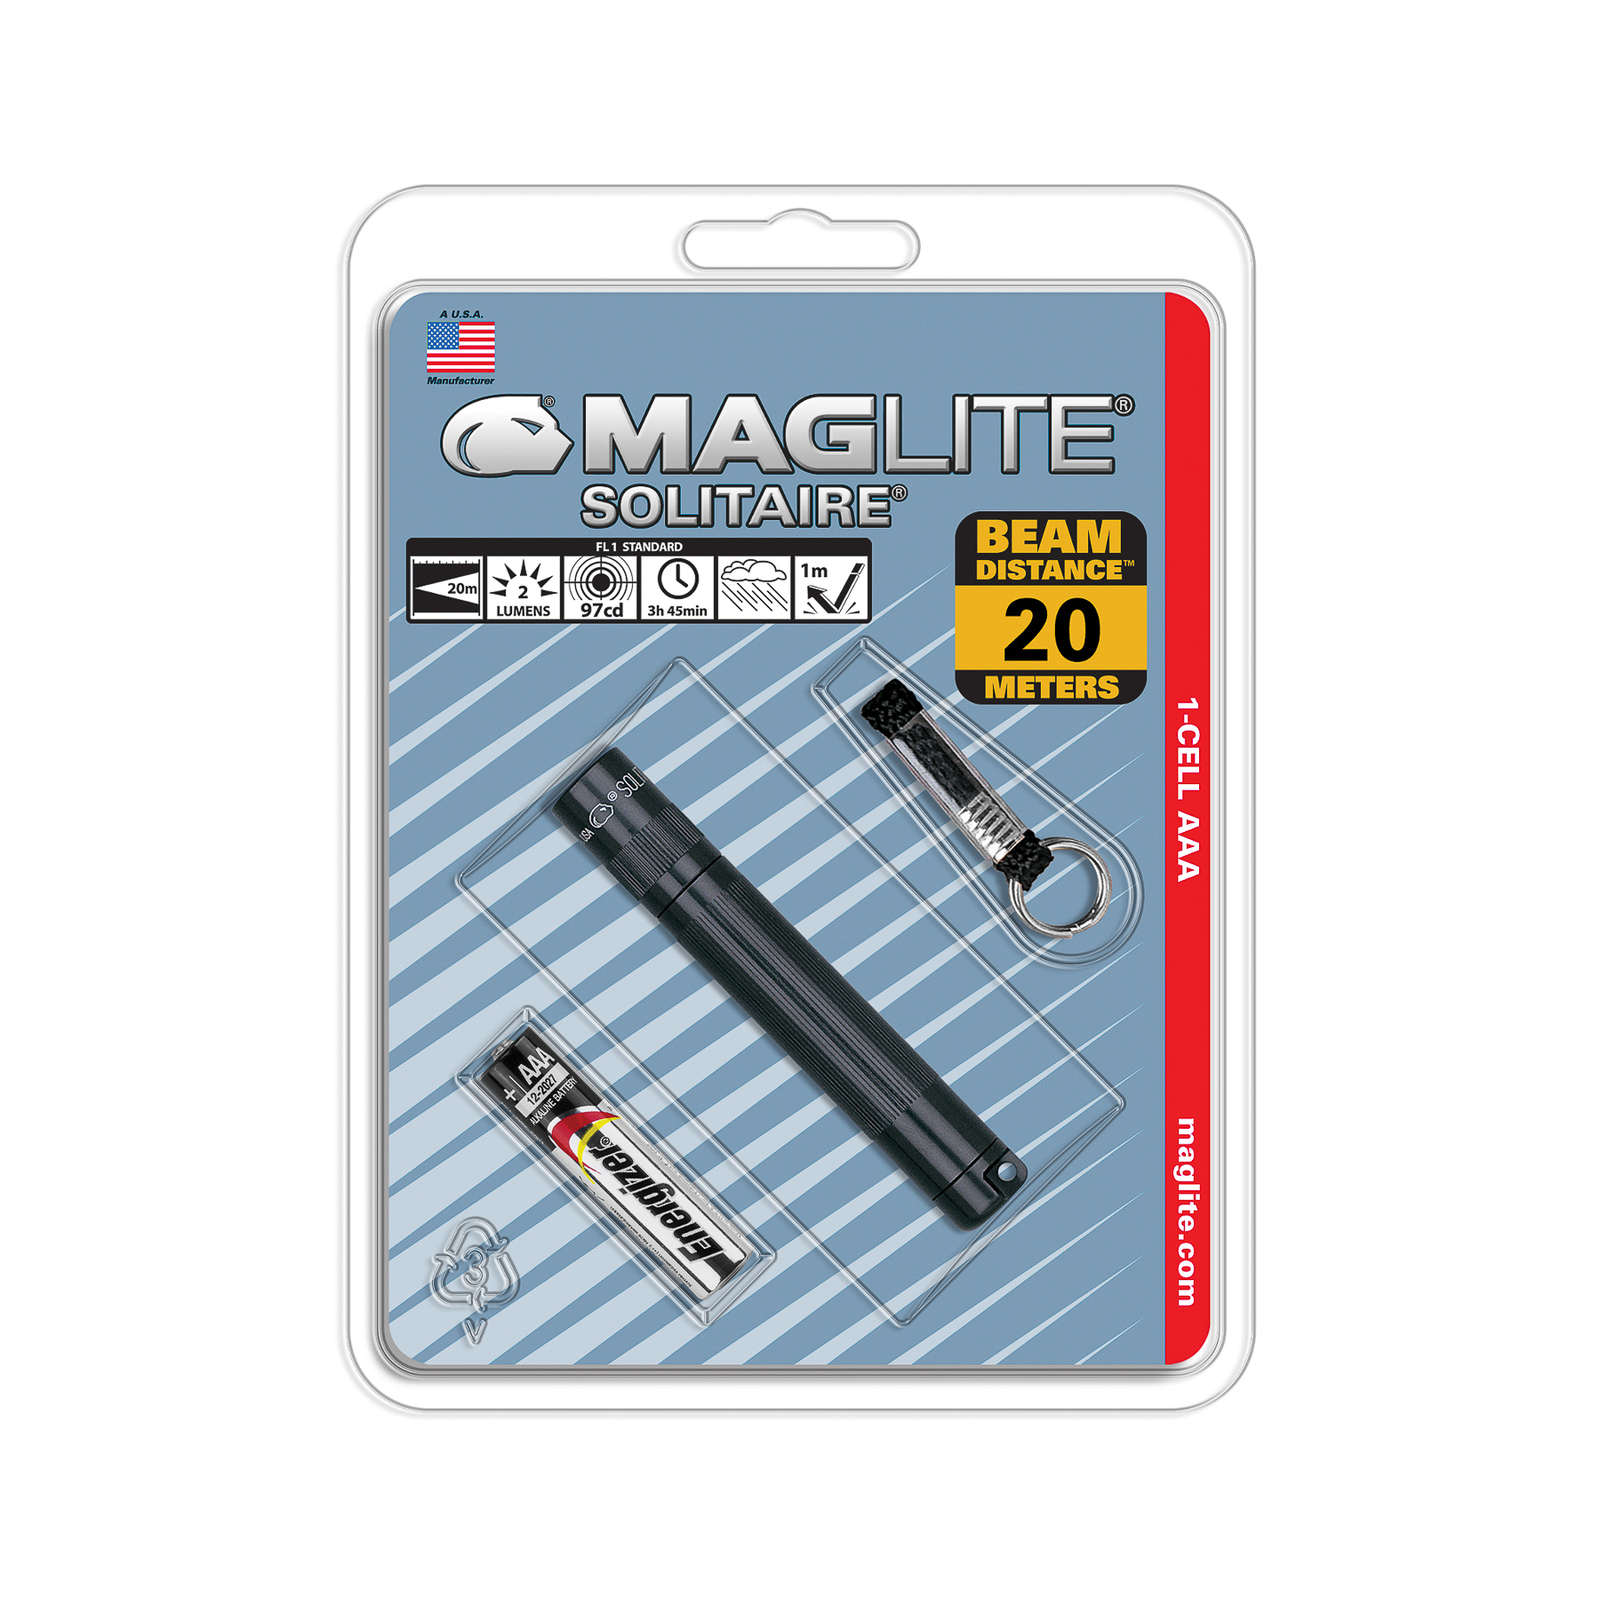 Maglite Xenon taskulamppu Solitaire 1-Cell AAA musta